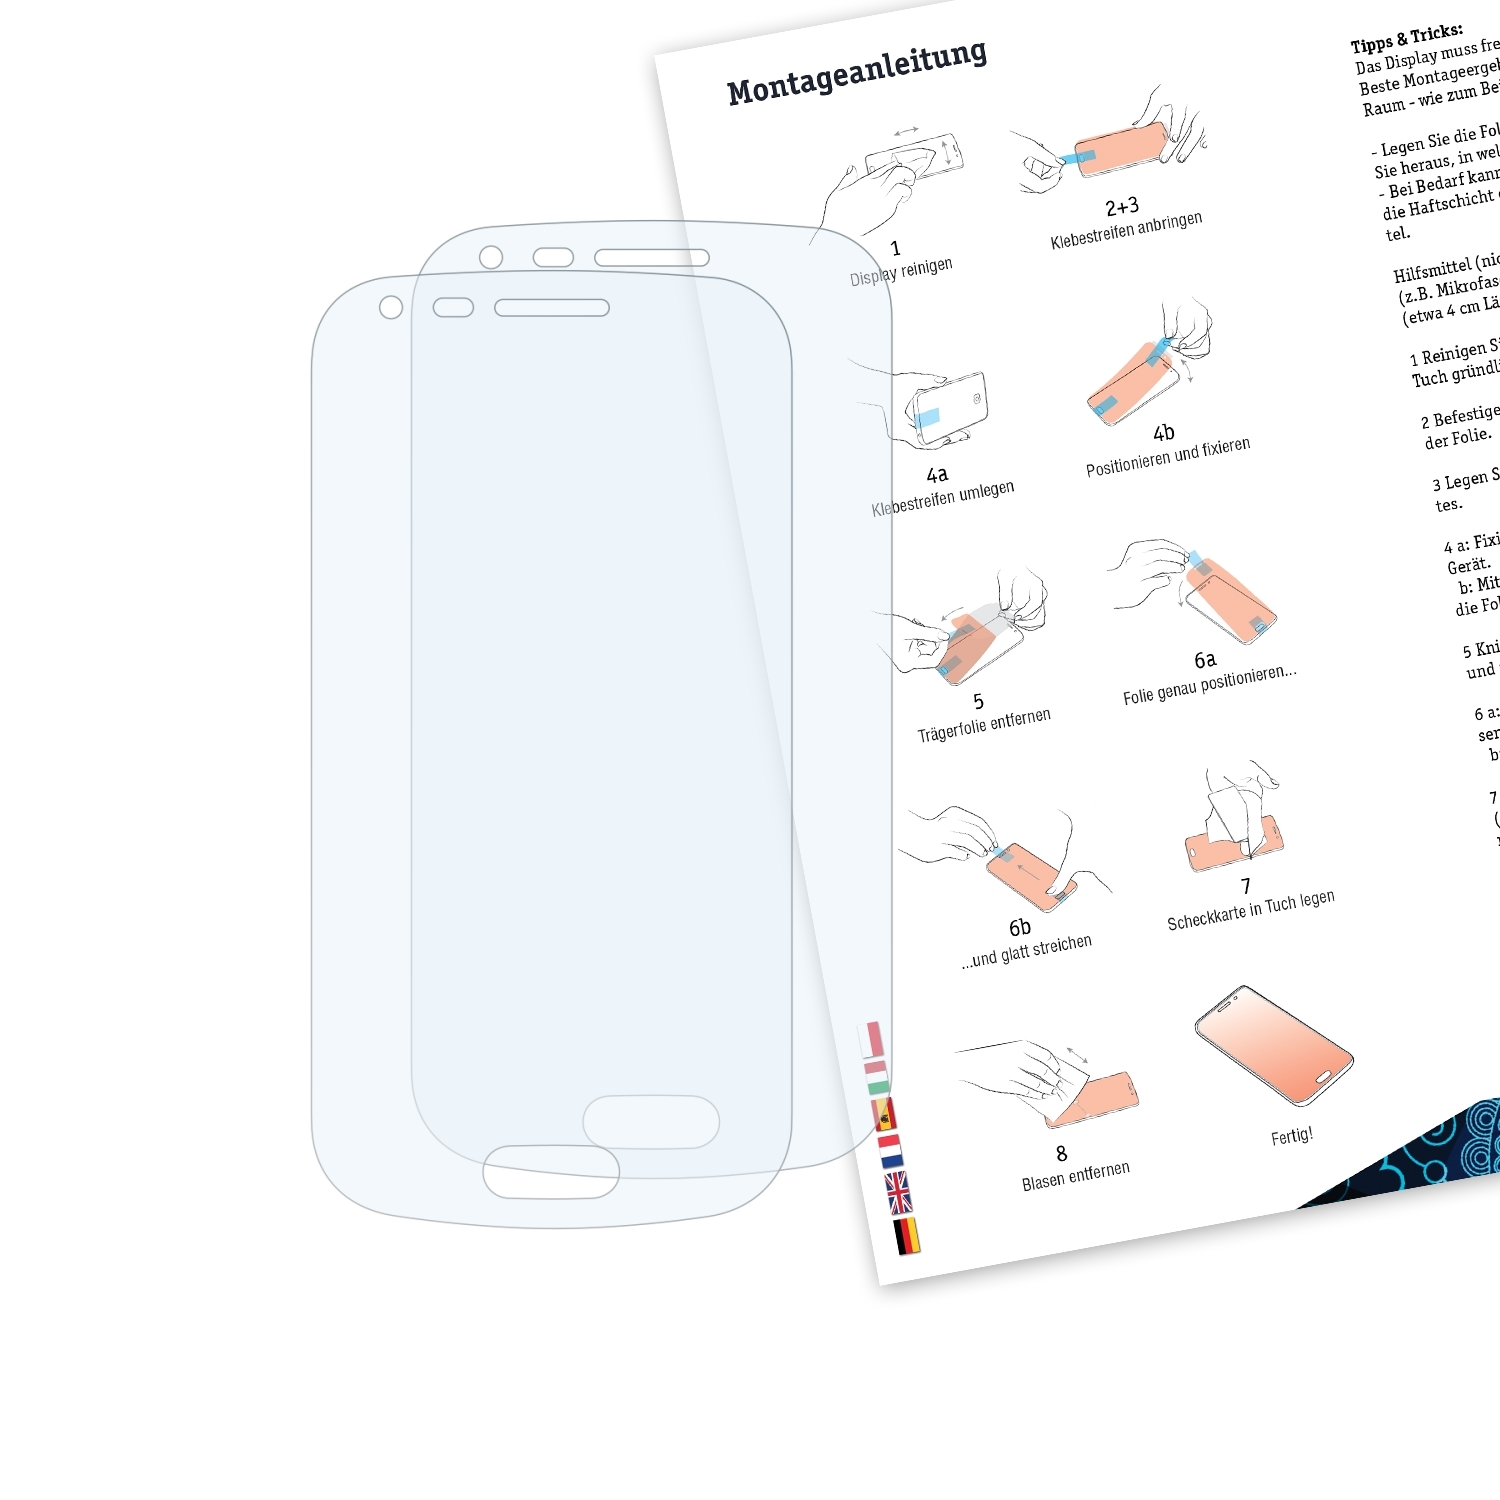 BRUNI 2x Basics-Clear Schutzfolie(für (GT-S7560)) Trend Galaxy Samsung